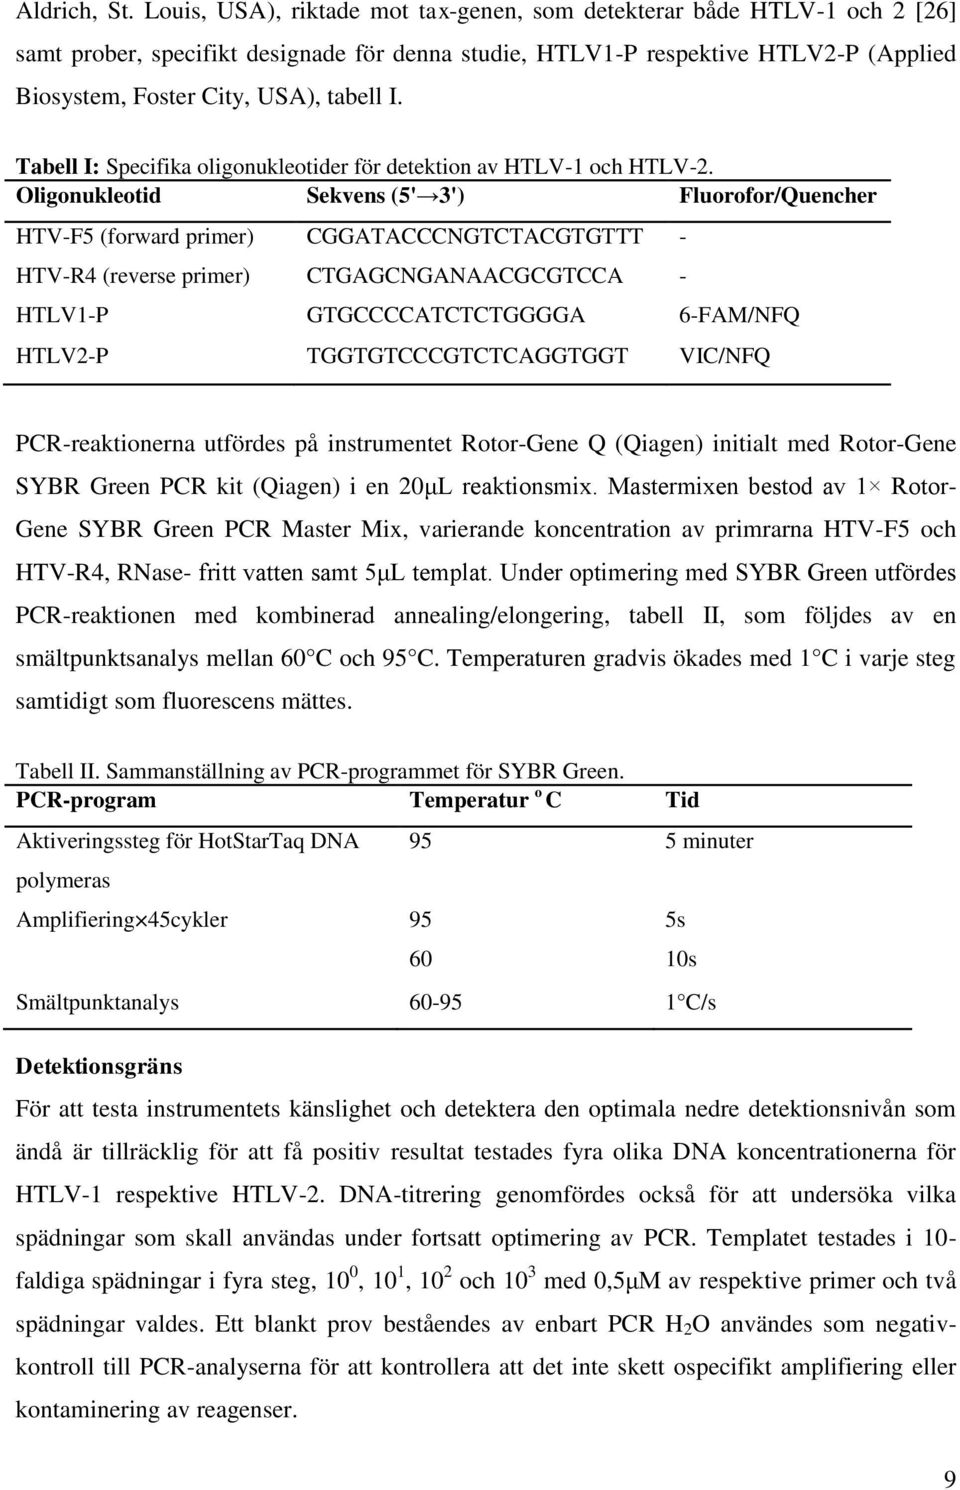 Tabell I: Specifika oligonukleotider för detektion av HTLV-1 och HTLV-2.